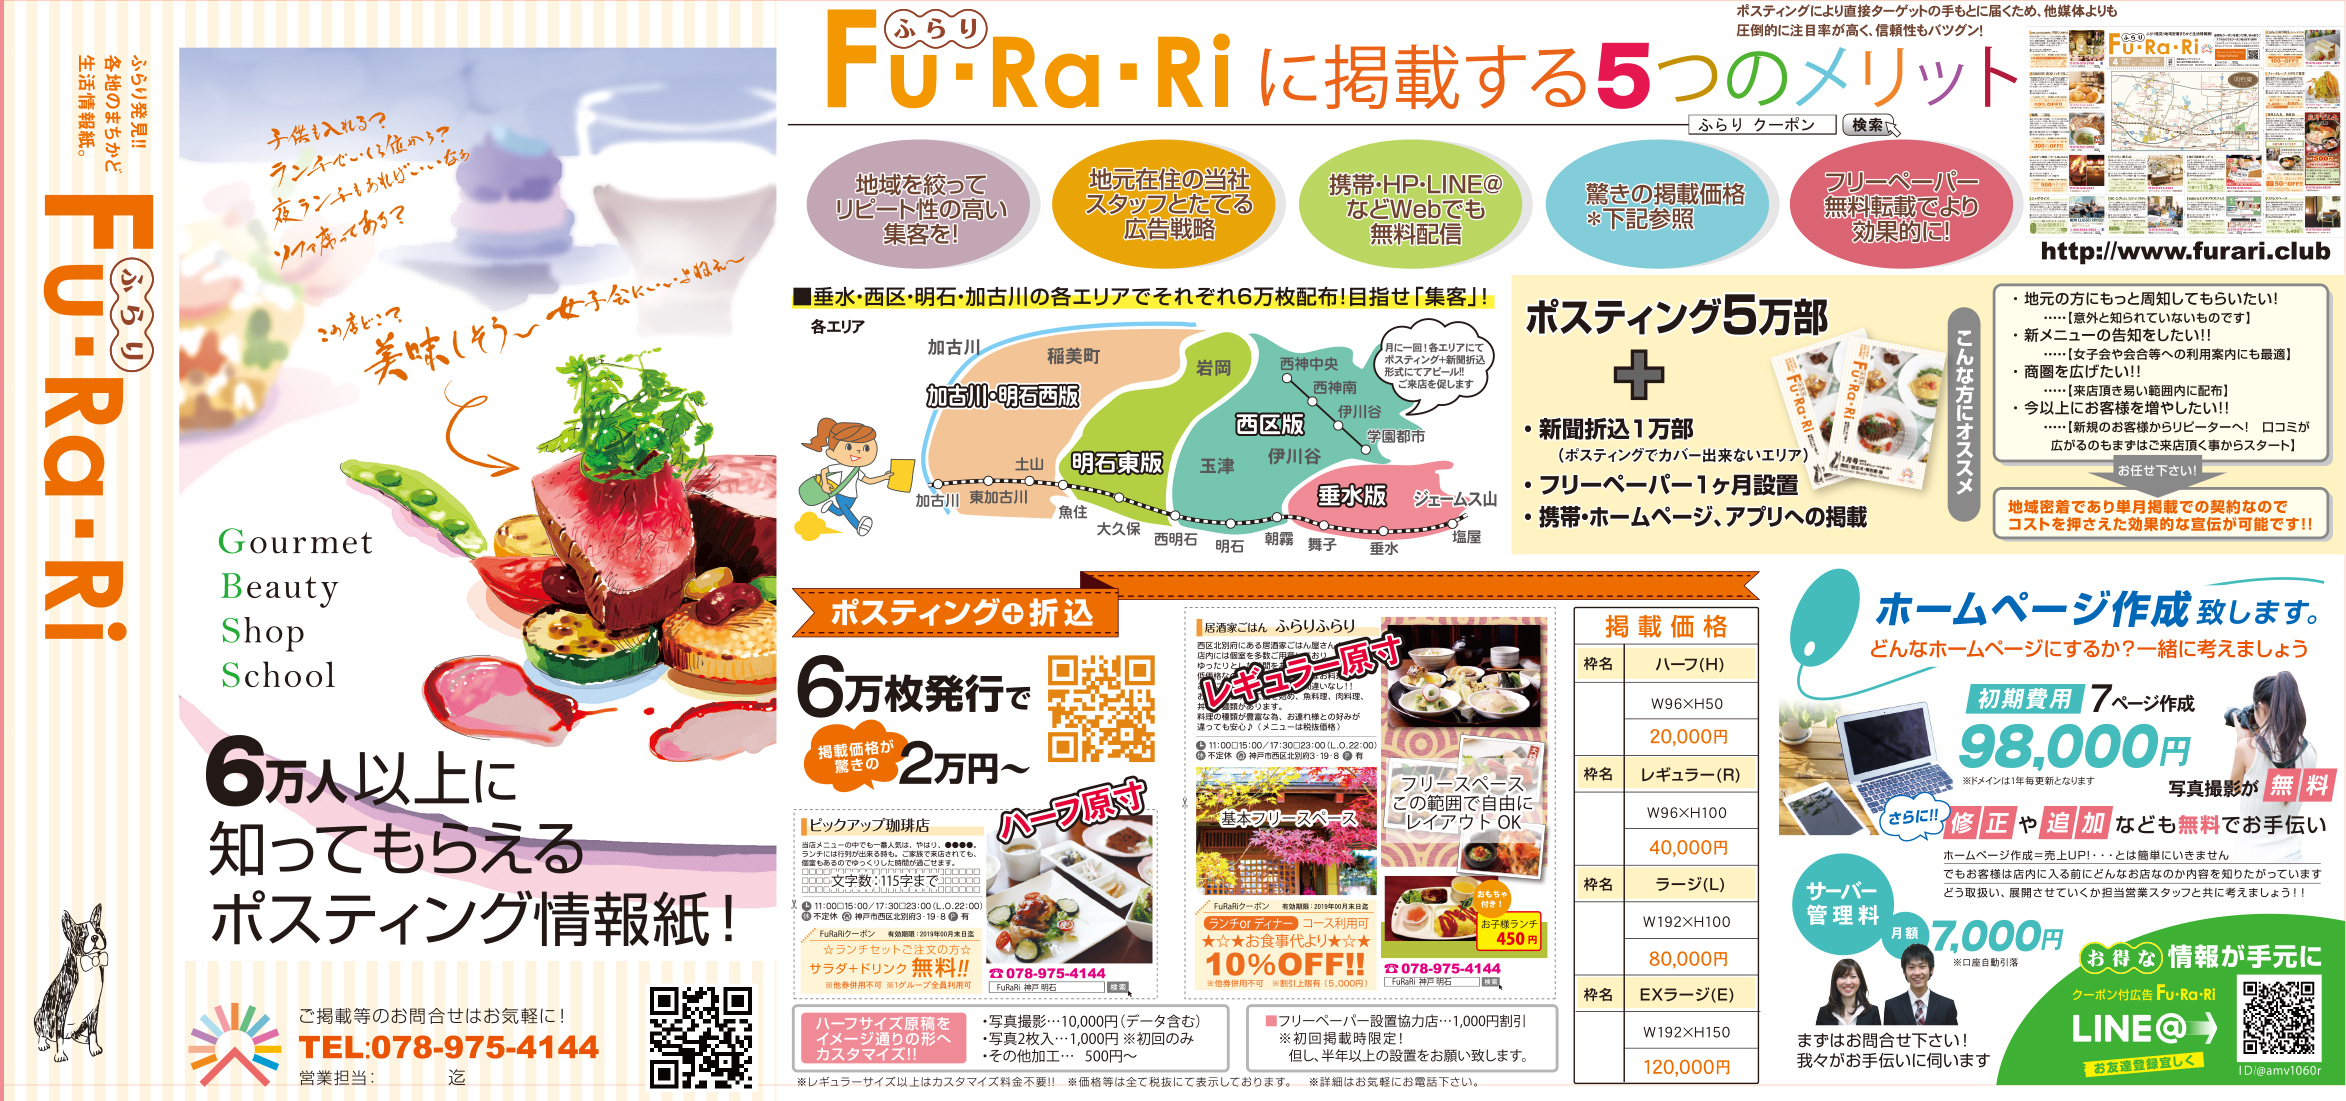 広告紙 FuRaRi